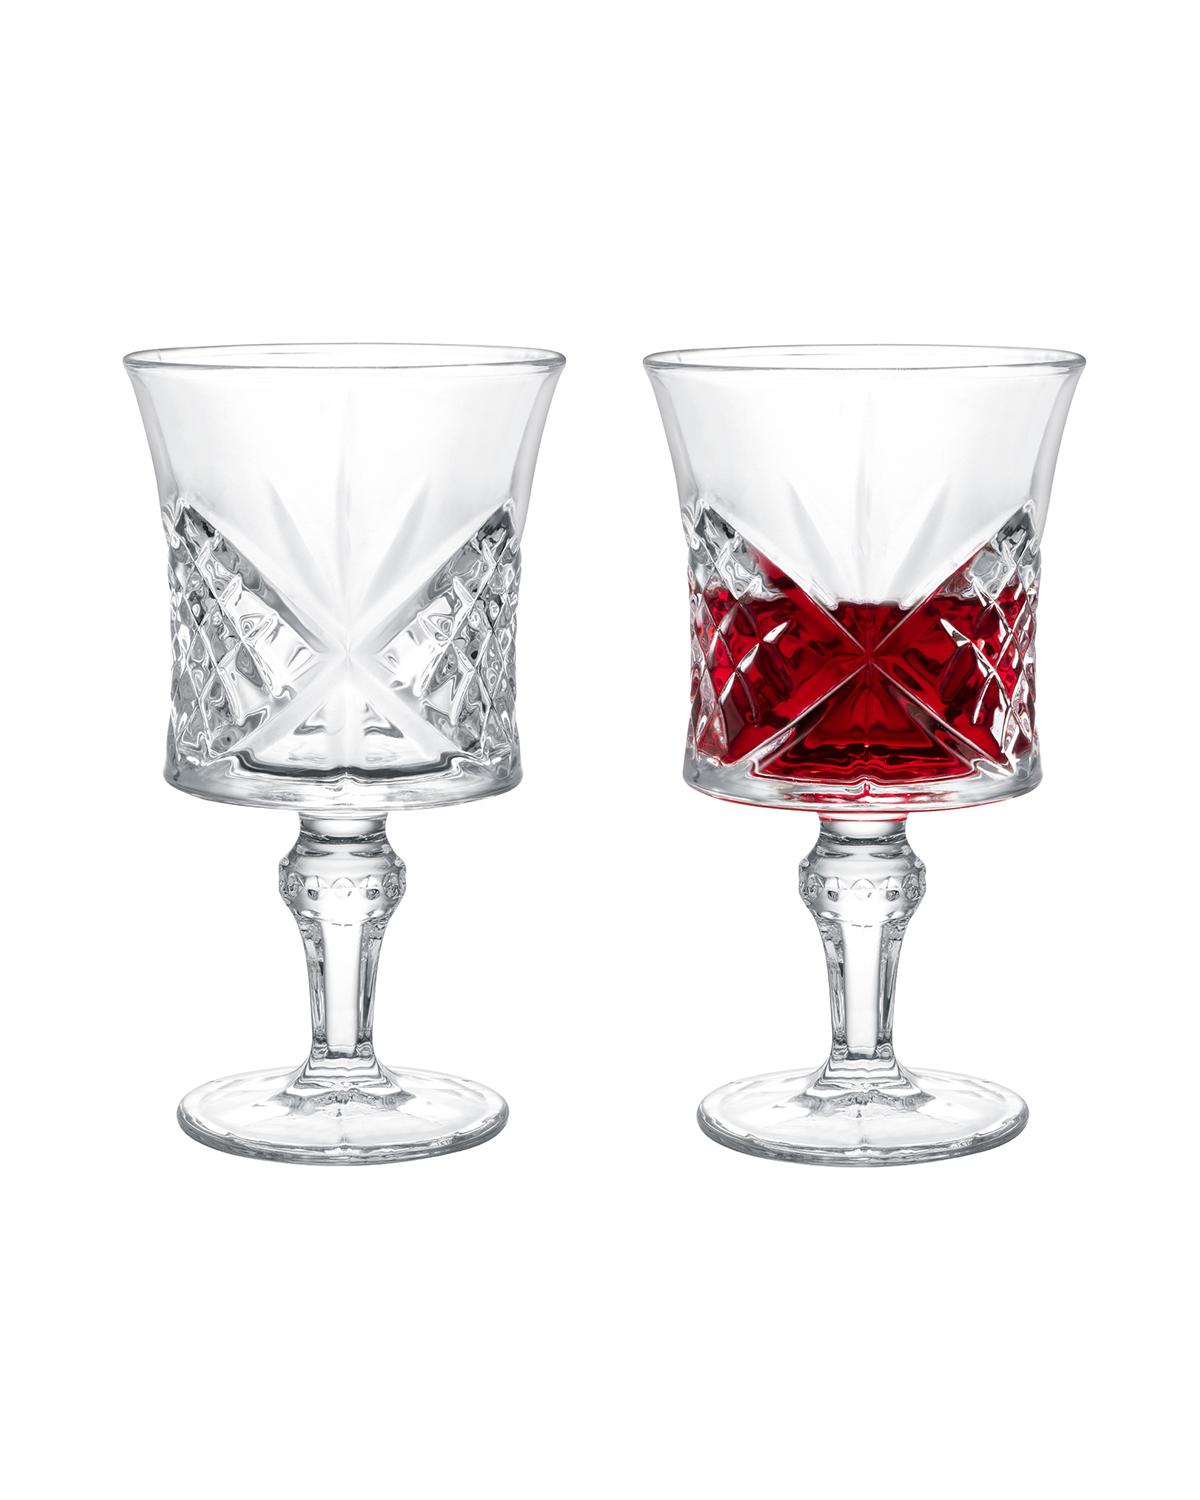 Selected image for MADAME COCO Aron Set čaša za vino, 4kom, 210ml